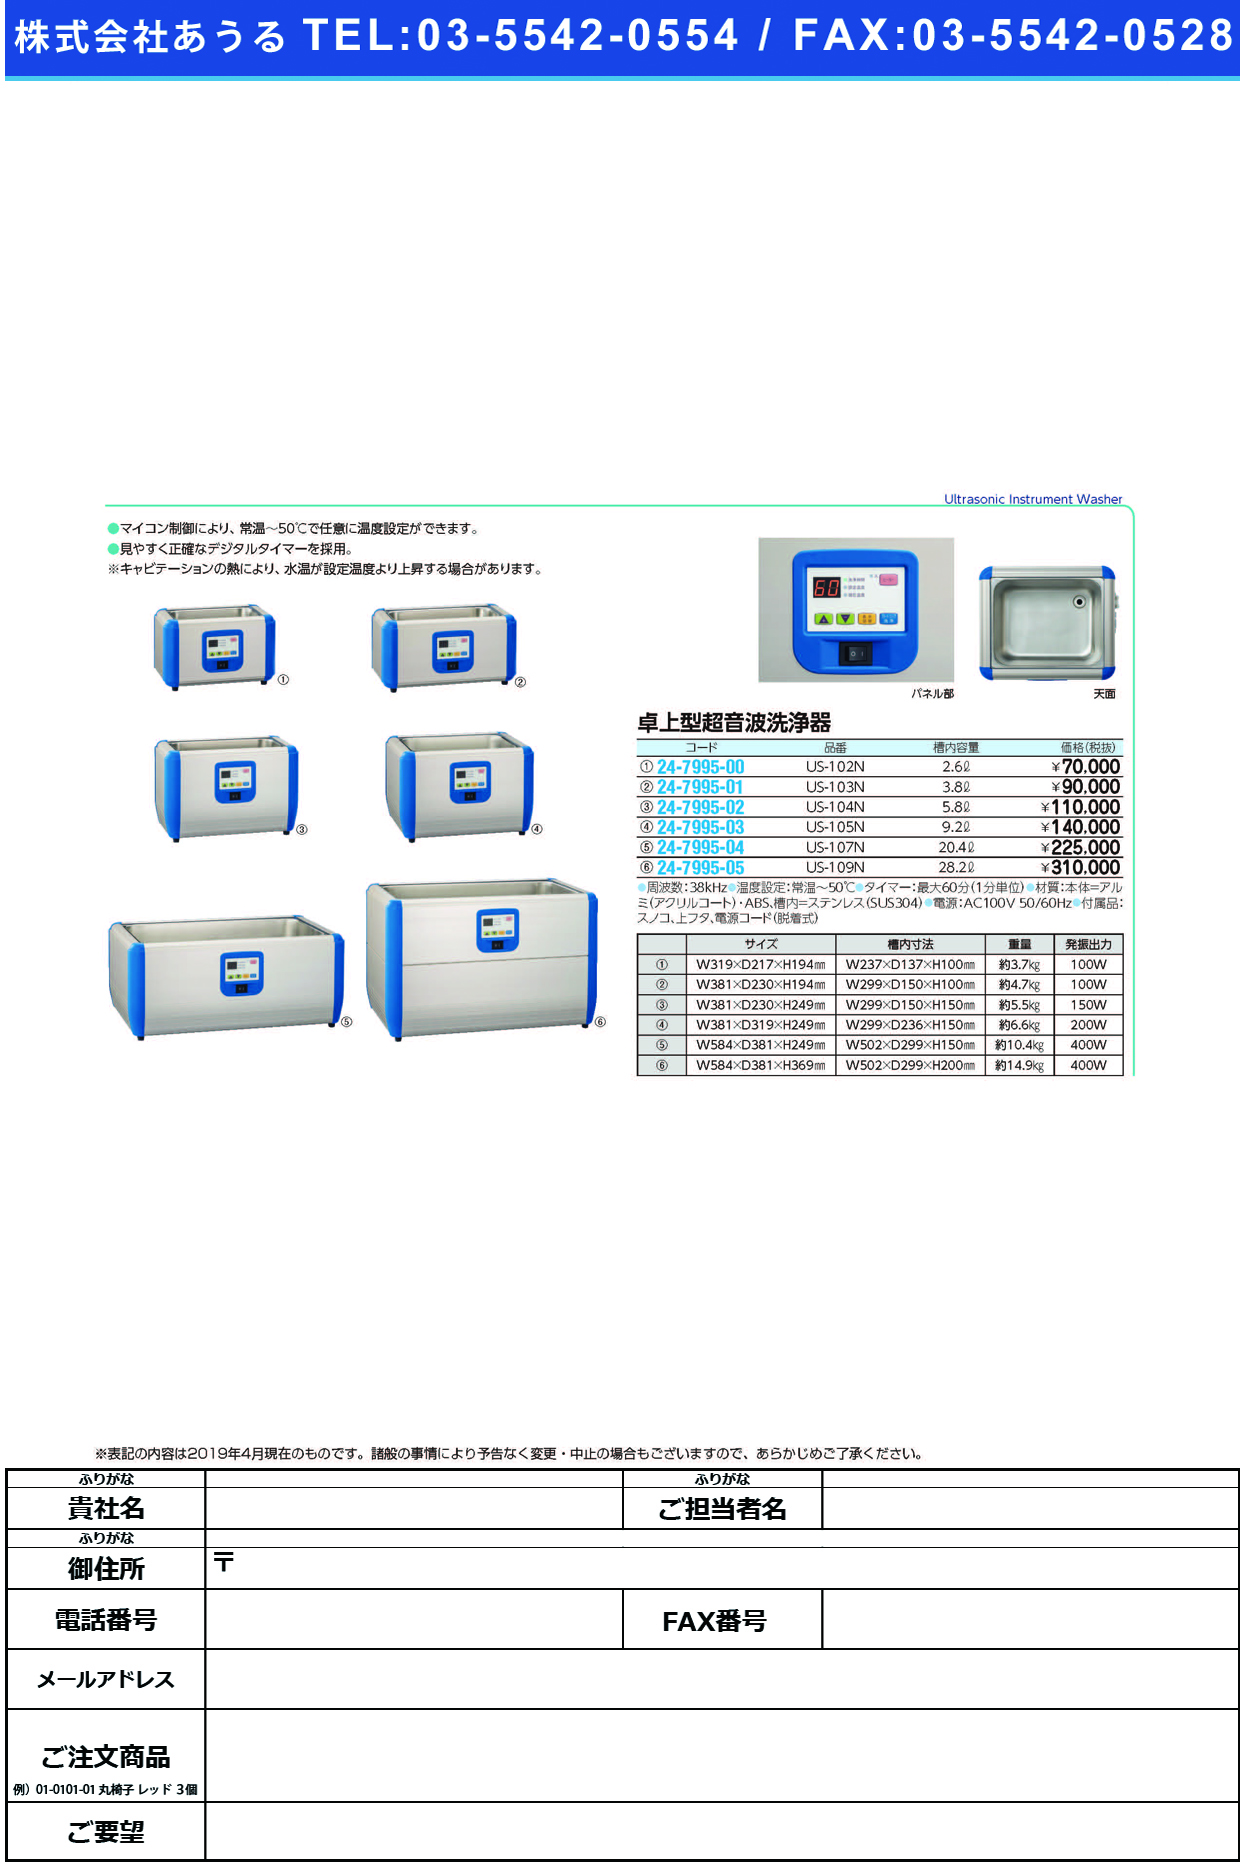 (24-7995-05)卓上型超音波洗浄器US-109N ﾀｸｼﾞｮｳｶﾞﾀﾁｮｳｵﾝﾊﾟｾﾝｼﾞ(三商)【1台単位】【2019年カタログ商品】